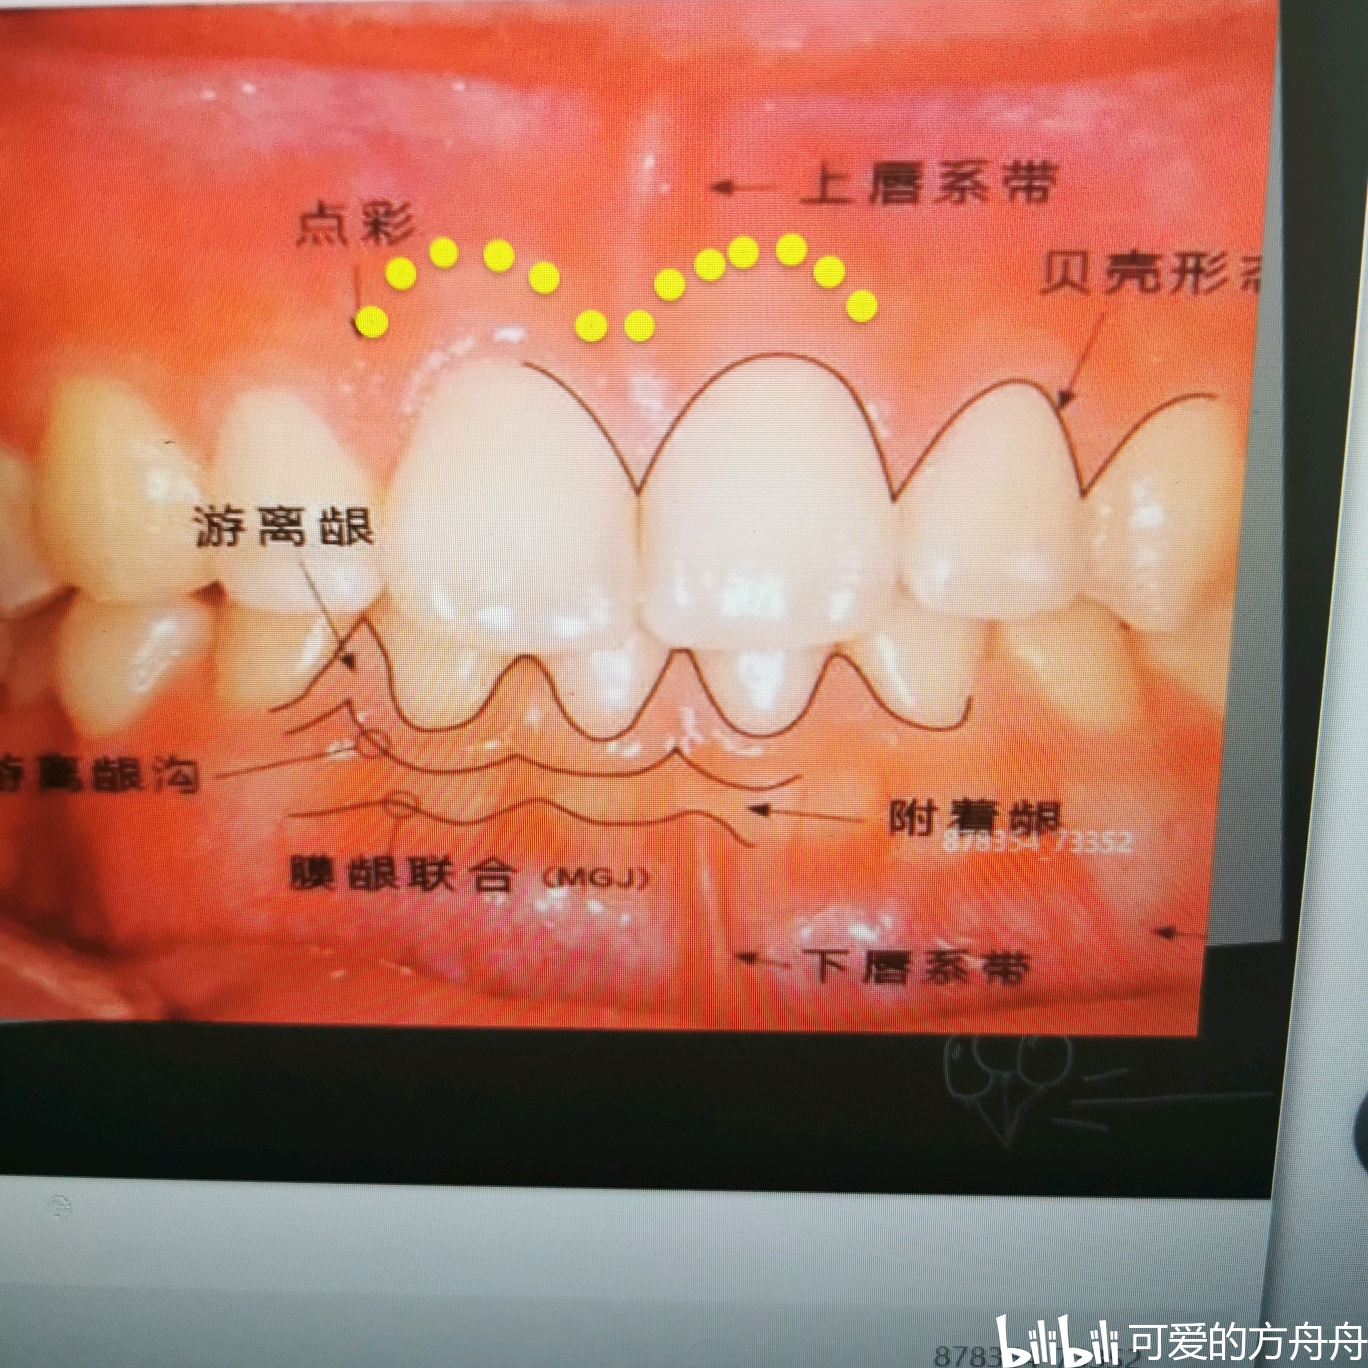 郑州牙医阎锦光 的想法: 牙齿龋坏到龈下，翻瓣树脂充填 - 知乎